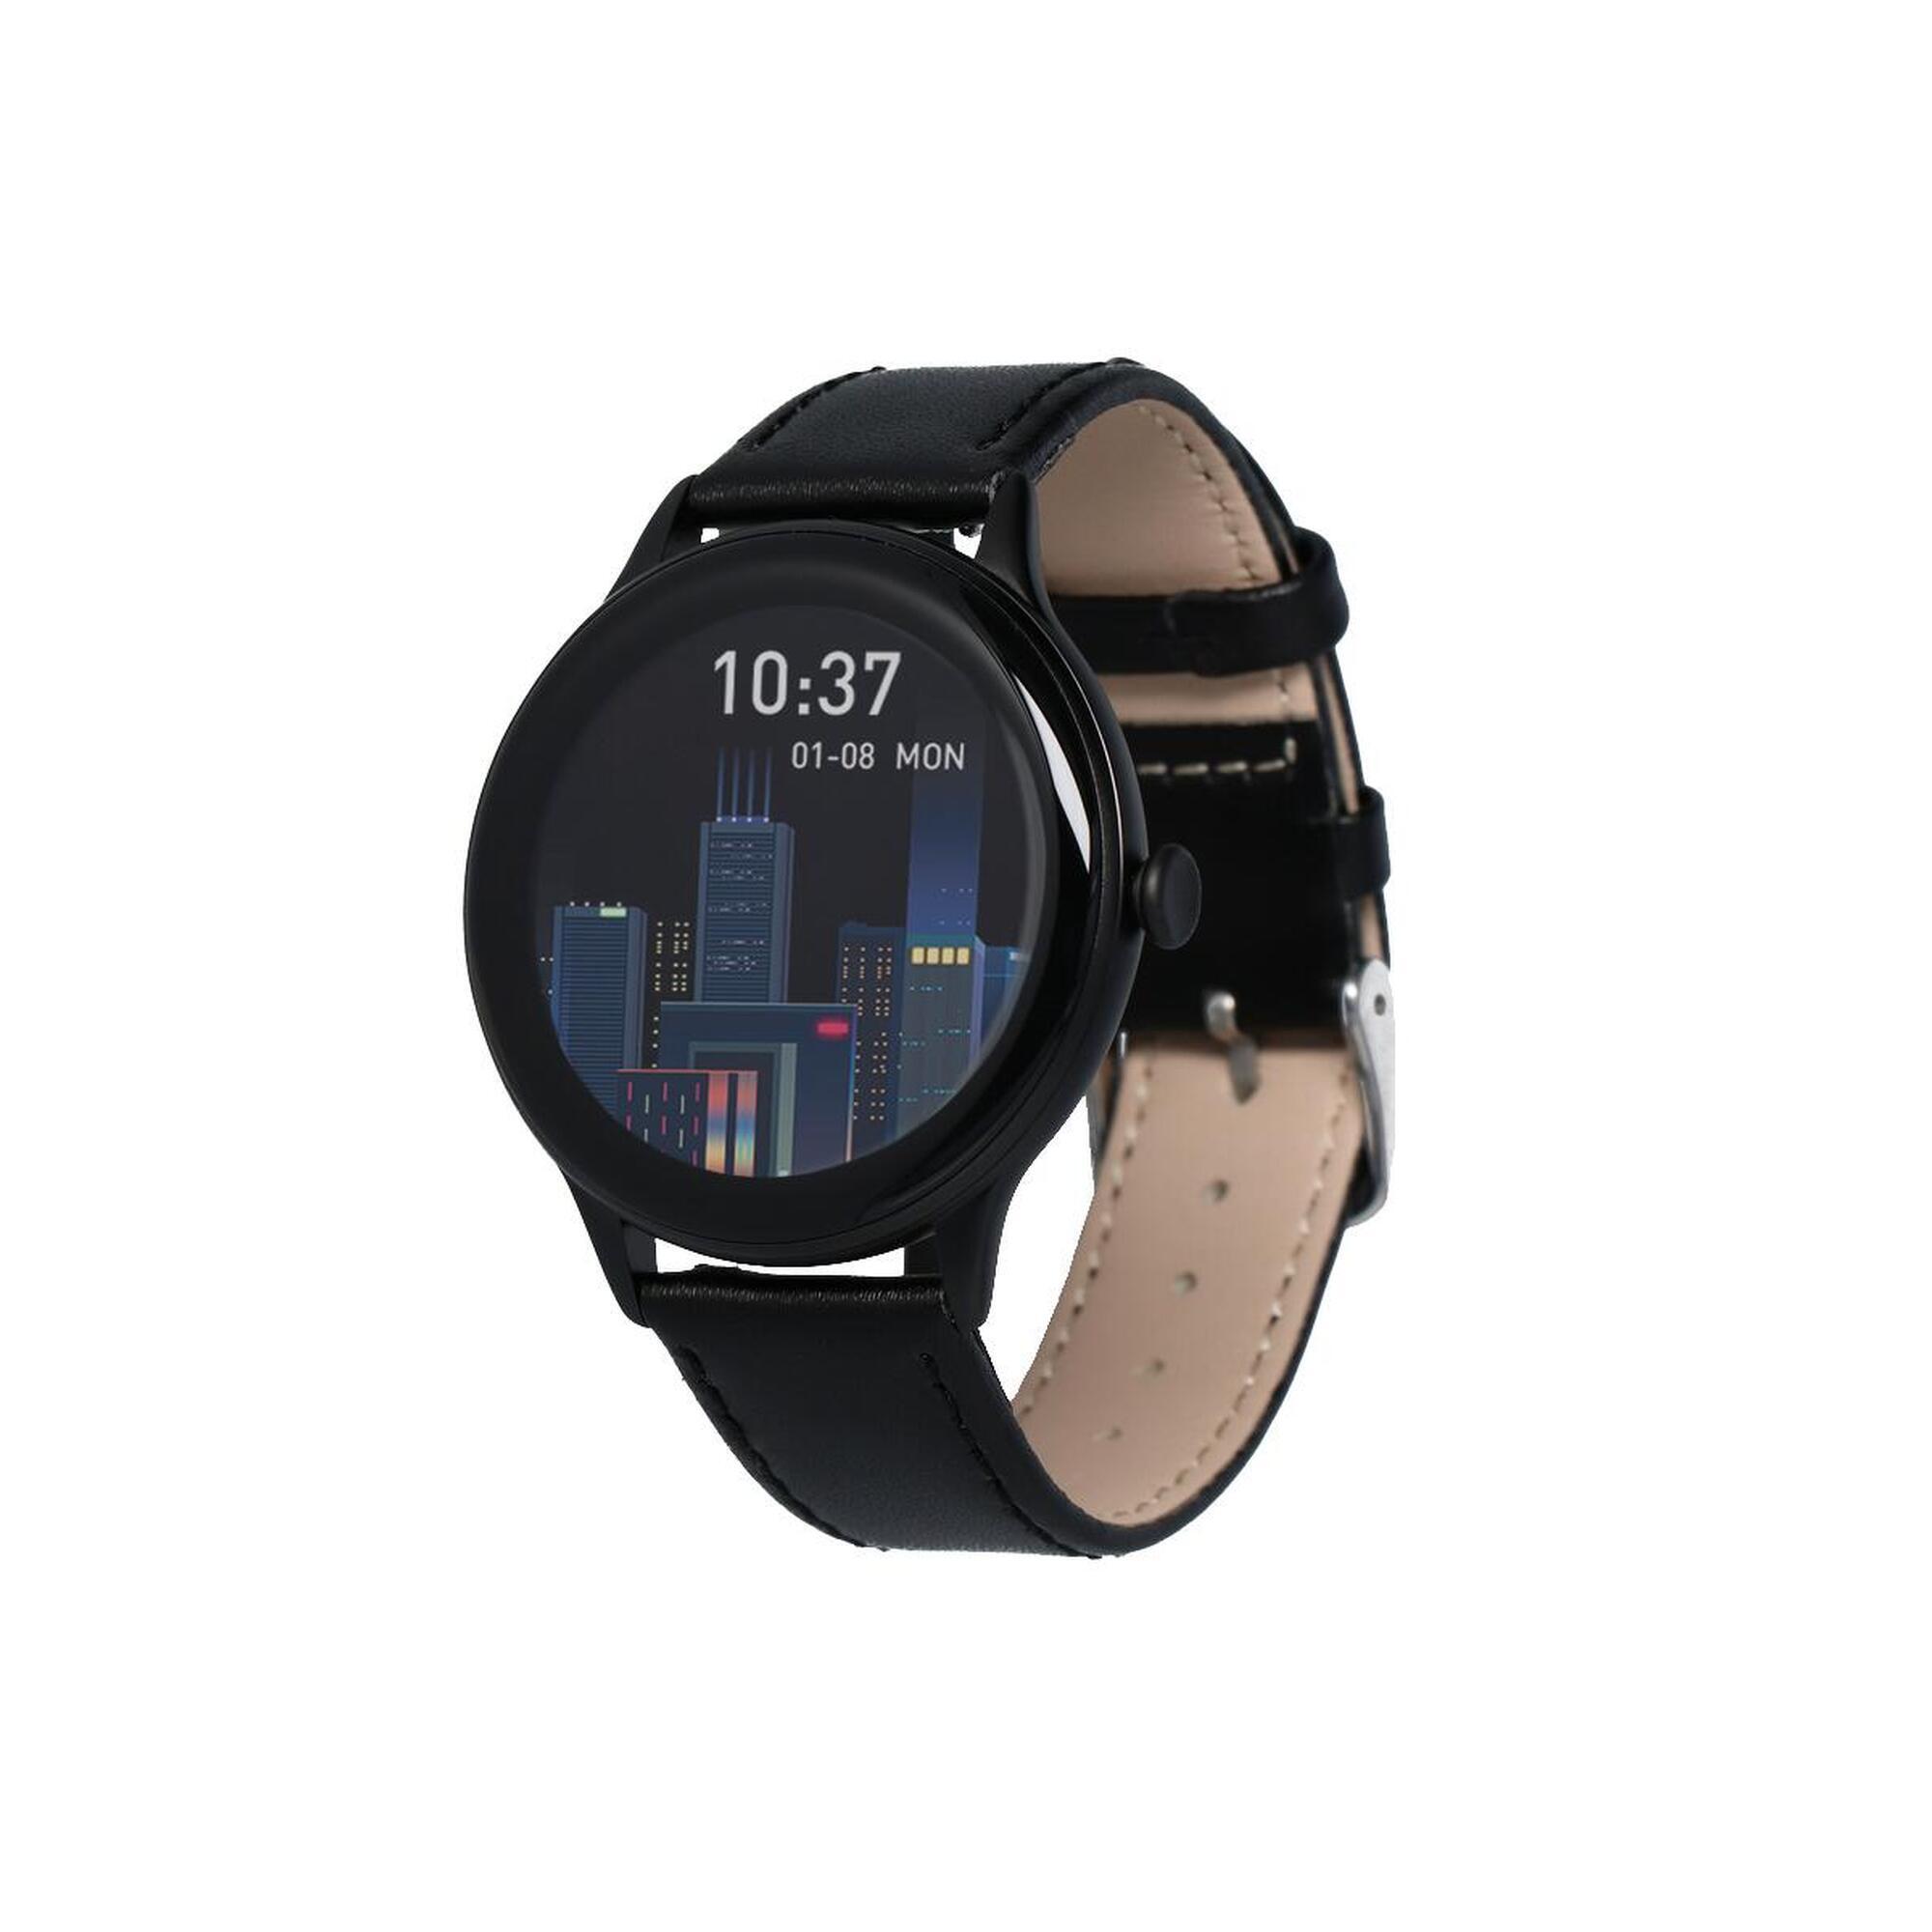 smartwatch MAXCOM